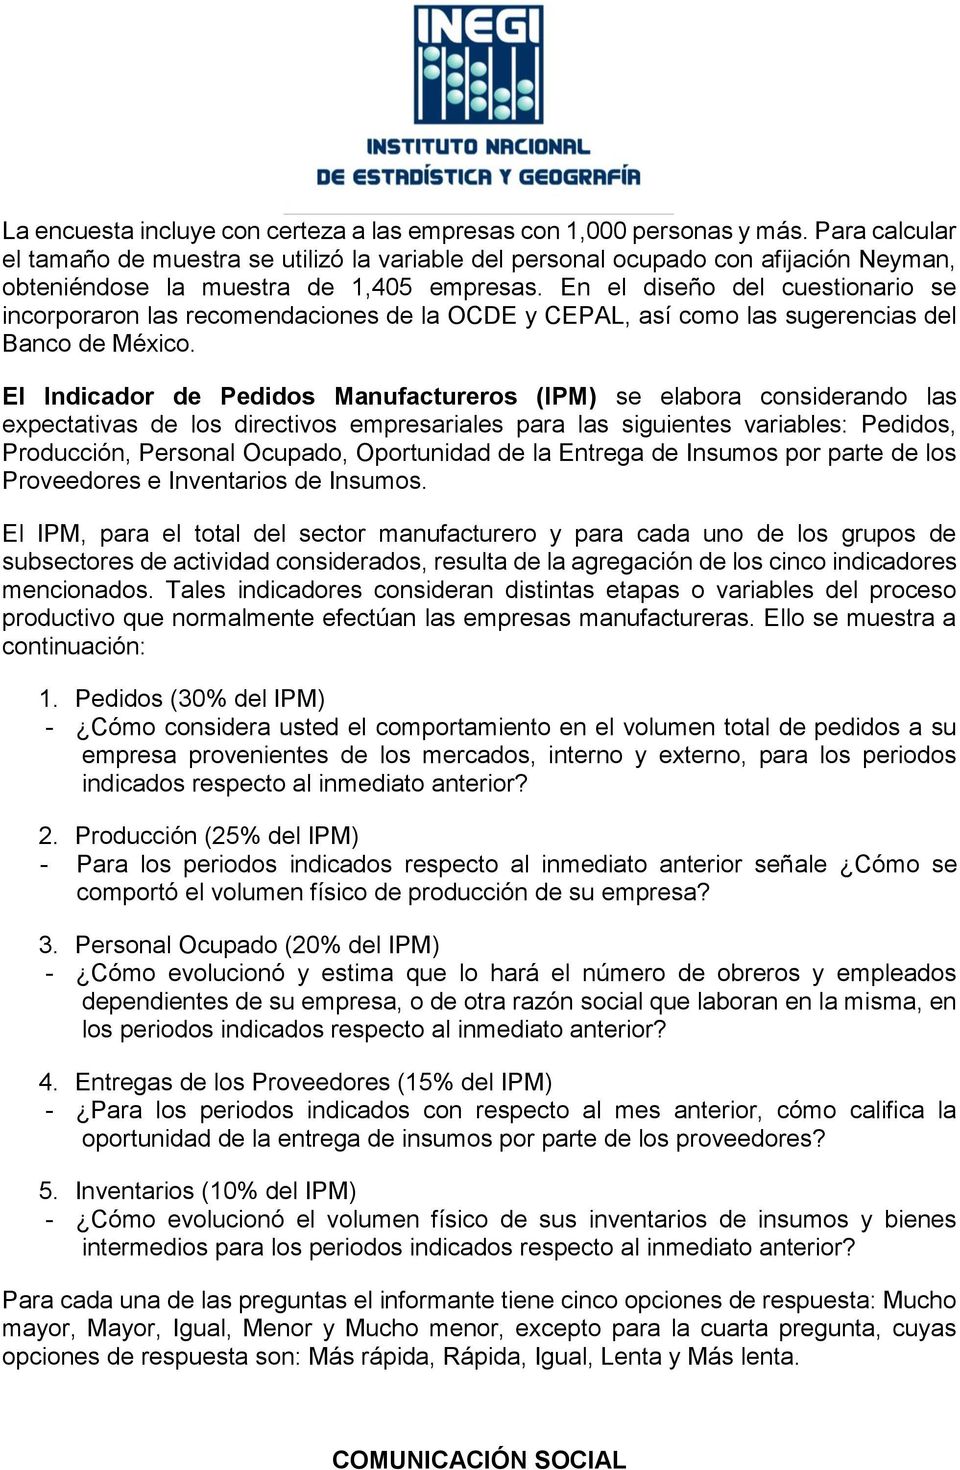 En el diseño del cuestionario se incorporaron las recomendaciones de la OCDE y CEPAL, así como las sugerencias del Banco de México.